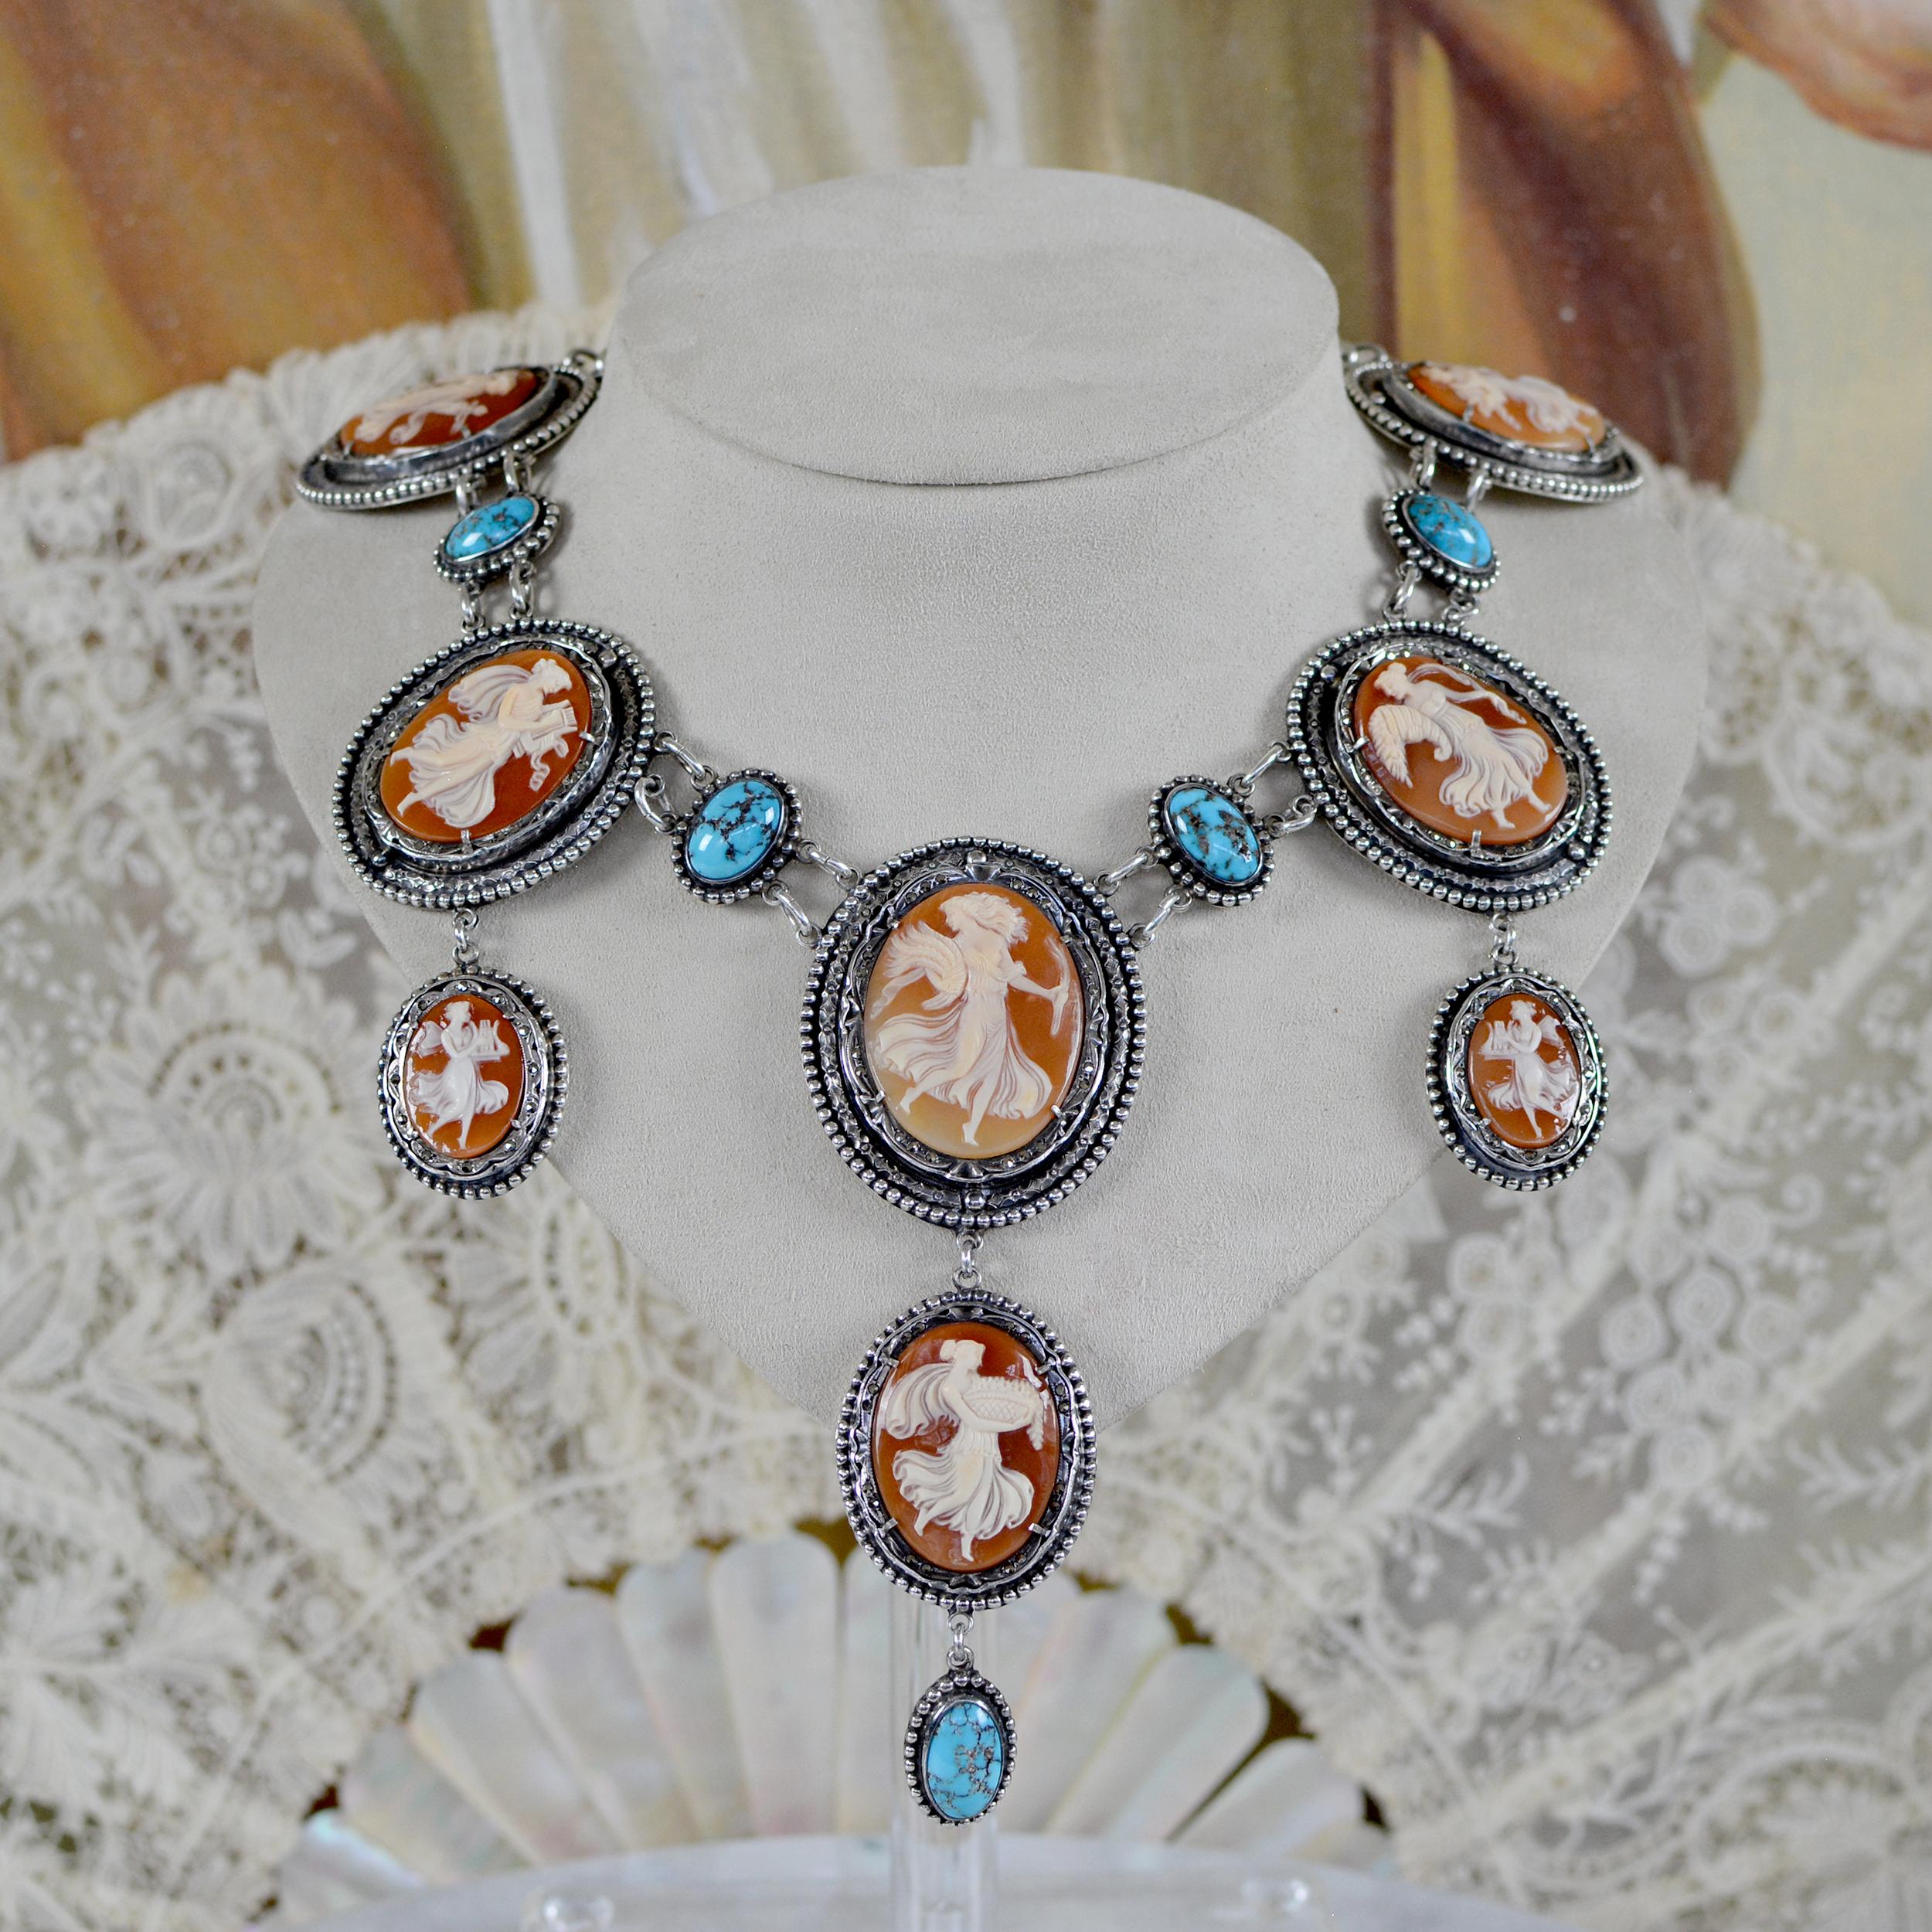 Cet exquis collier de style baroque, unique en son genre et fabriqué à la main par la créatrice Jill Garber, comprend huit (8) camées en coquillage naturel finement sculptés, datant de la fin du XIXe siècle et représentant Terpsichore, l'une des